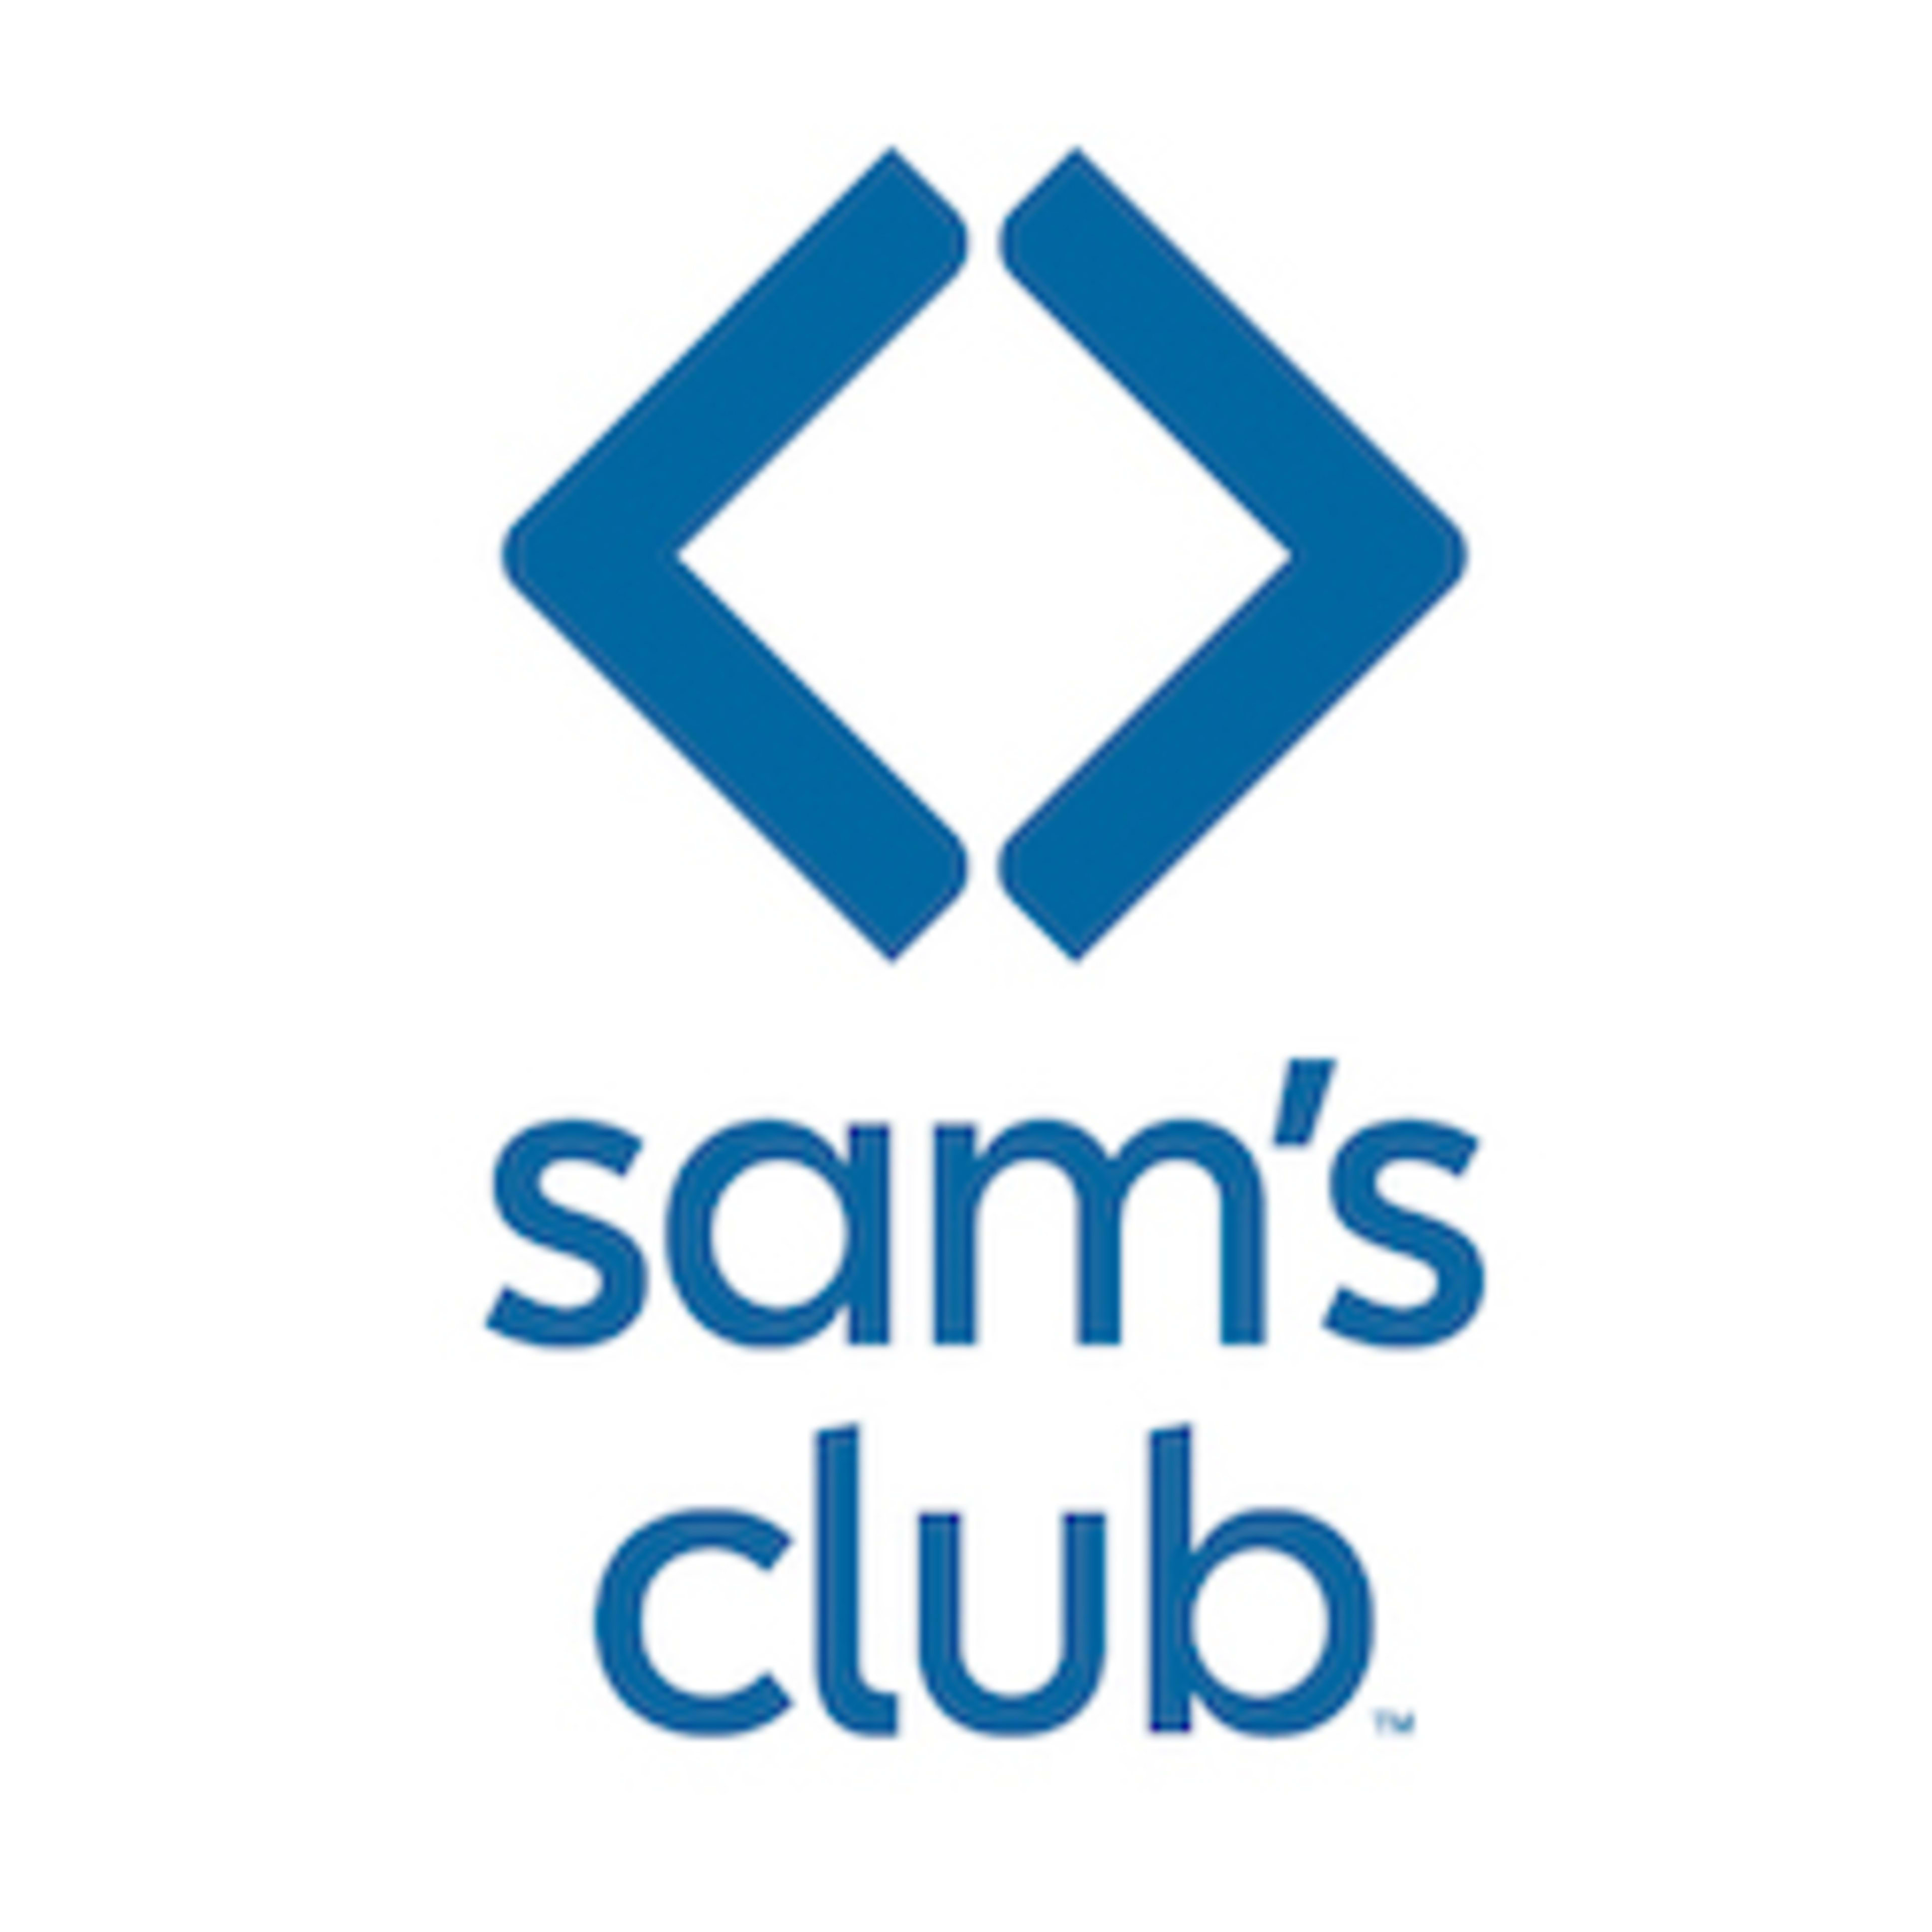 Sam's Club Code